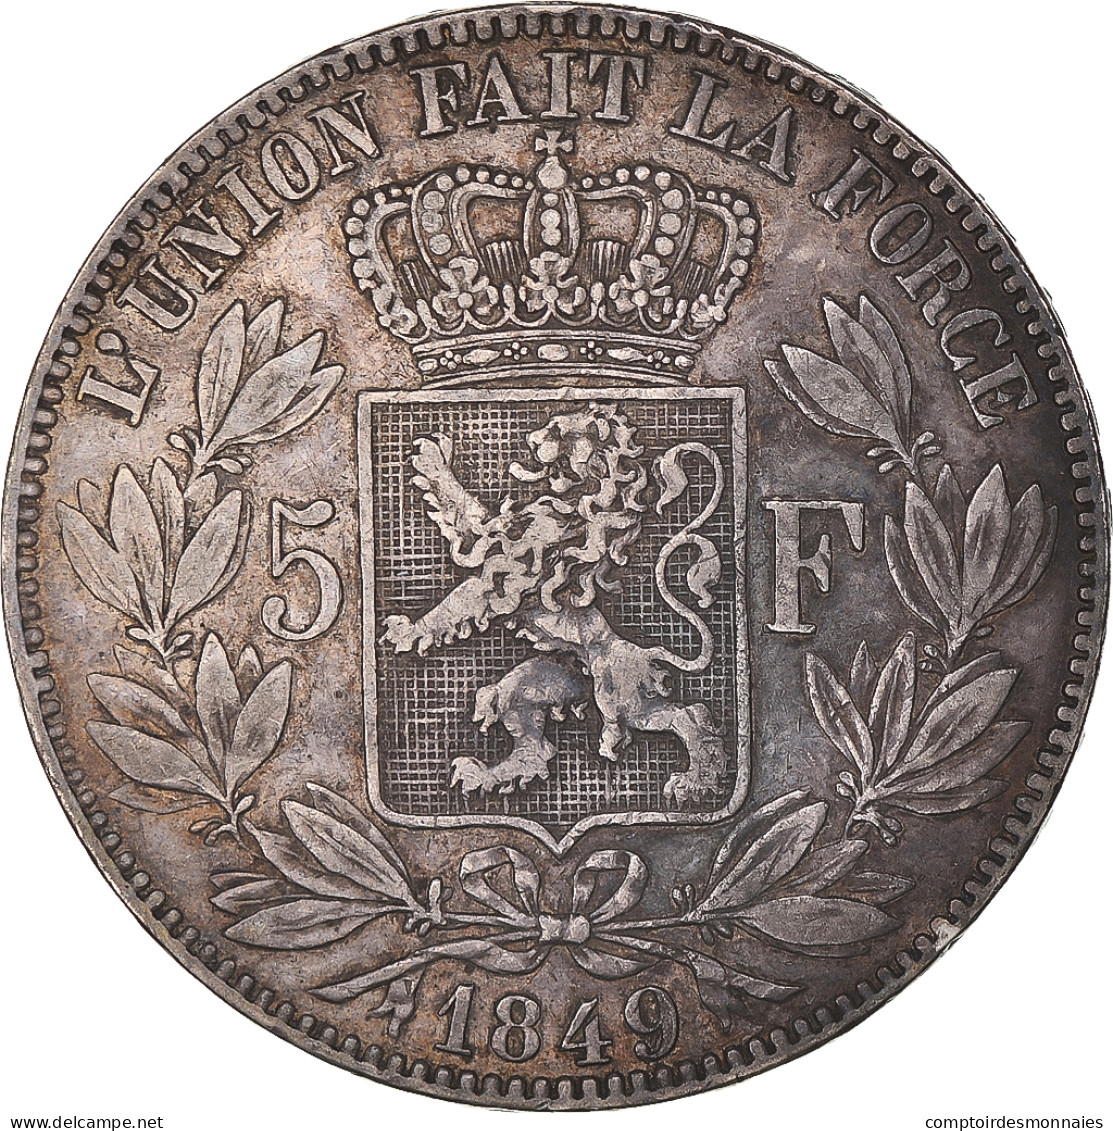 Monnaie, Belgique, Leopold I, 5 Francs, 5 Frank, 1849, Bruxelles, TB+, Argent - 5 Francs